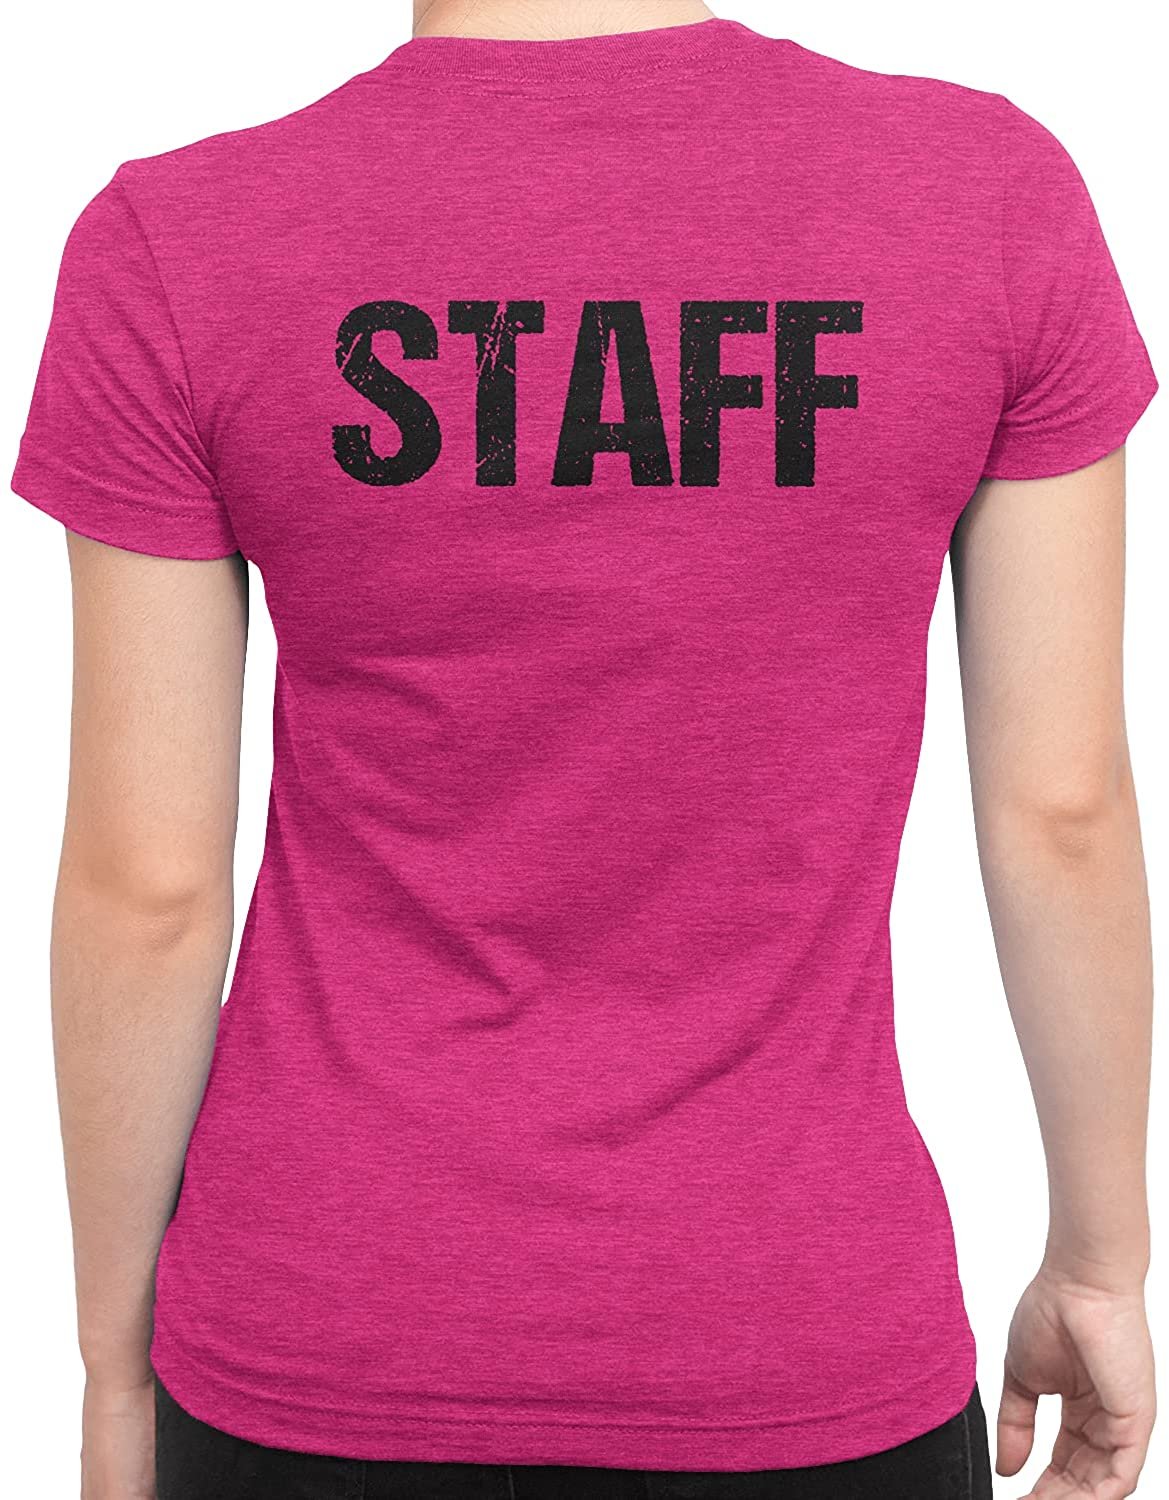 T-shirt à manches courtes pour femmes Staff (motif vieilli, rose chiné)